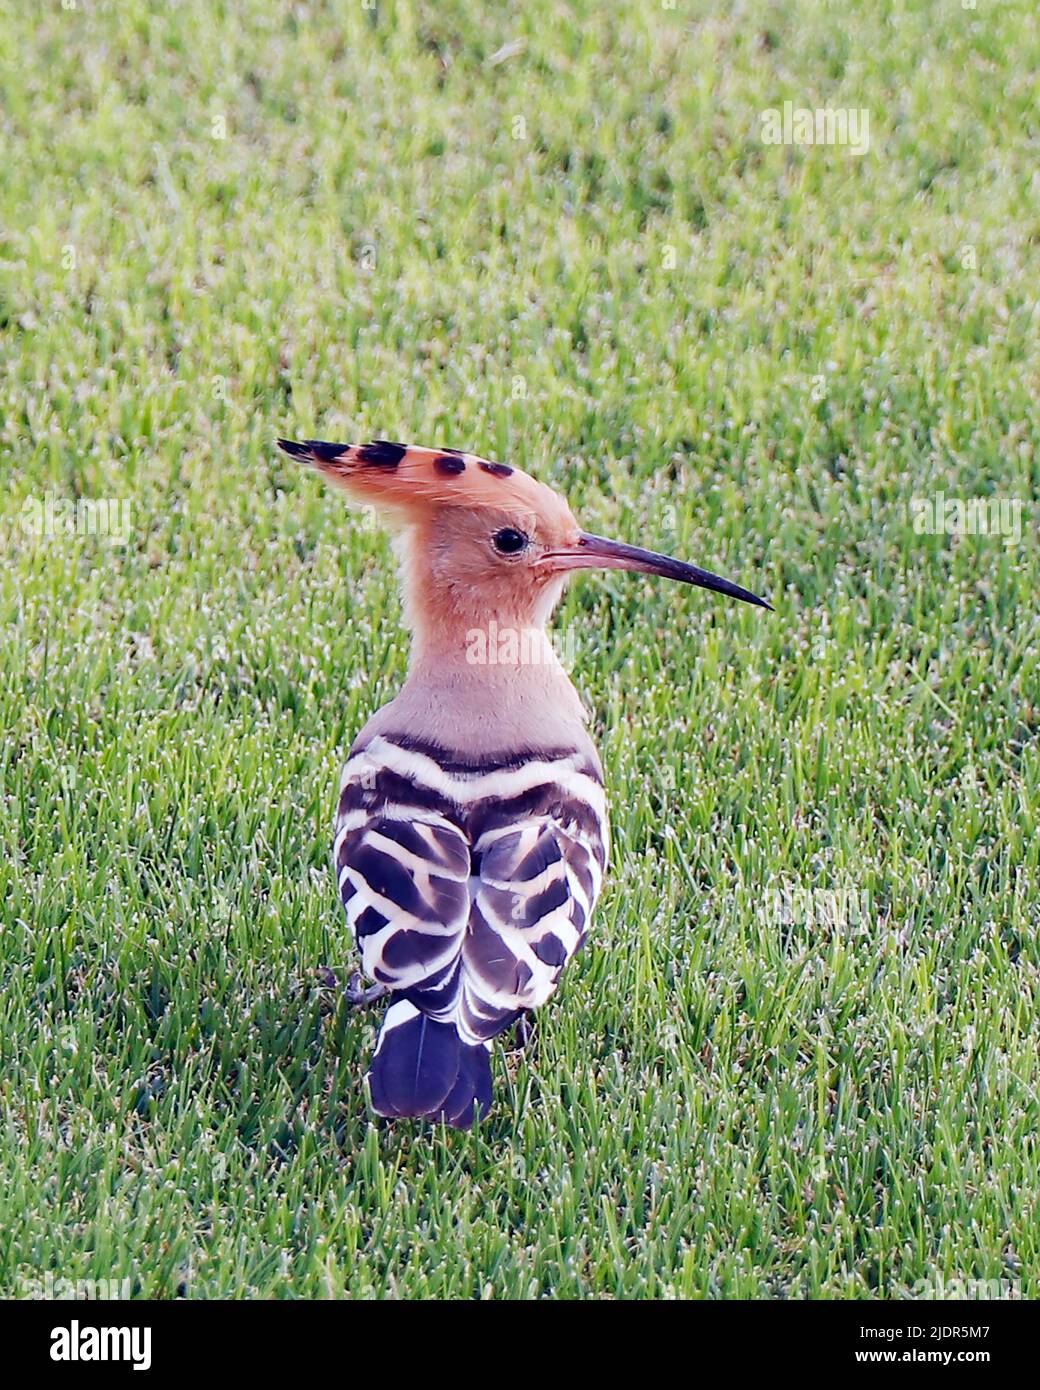 Les hoopes sont des oiseaux colorés que l'on retrouve en Afrique, en Asie et en Europe, remarquables pour leur « couronne » de plumes. Banque D'Images